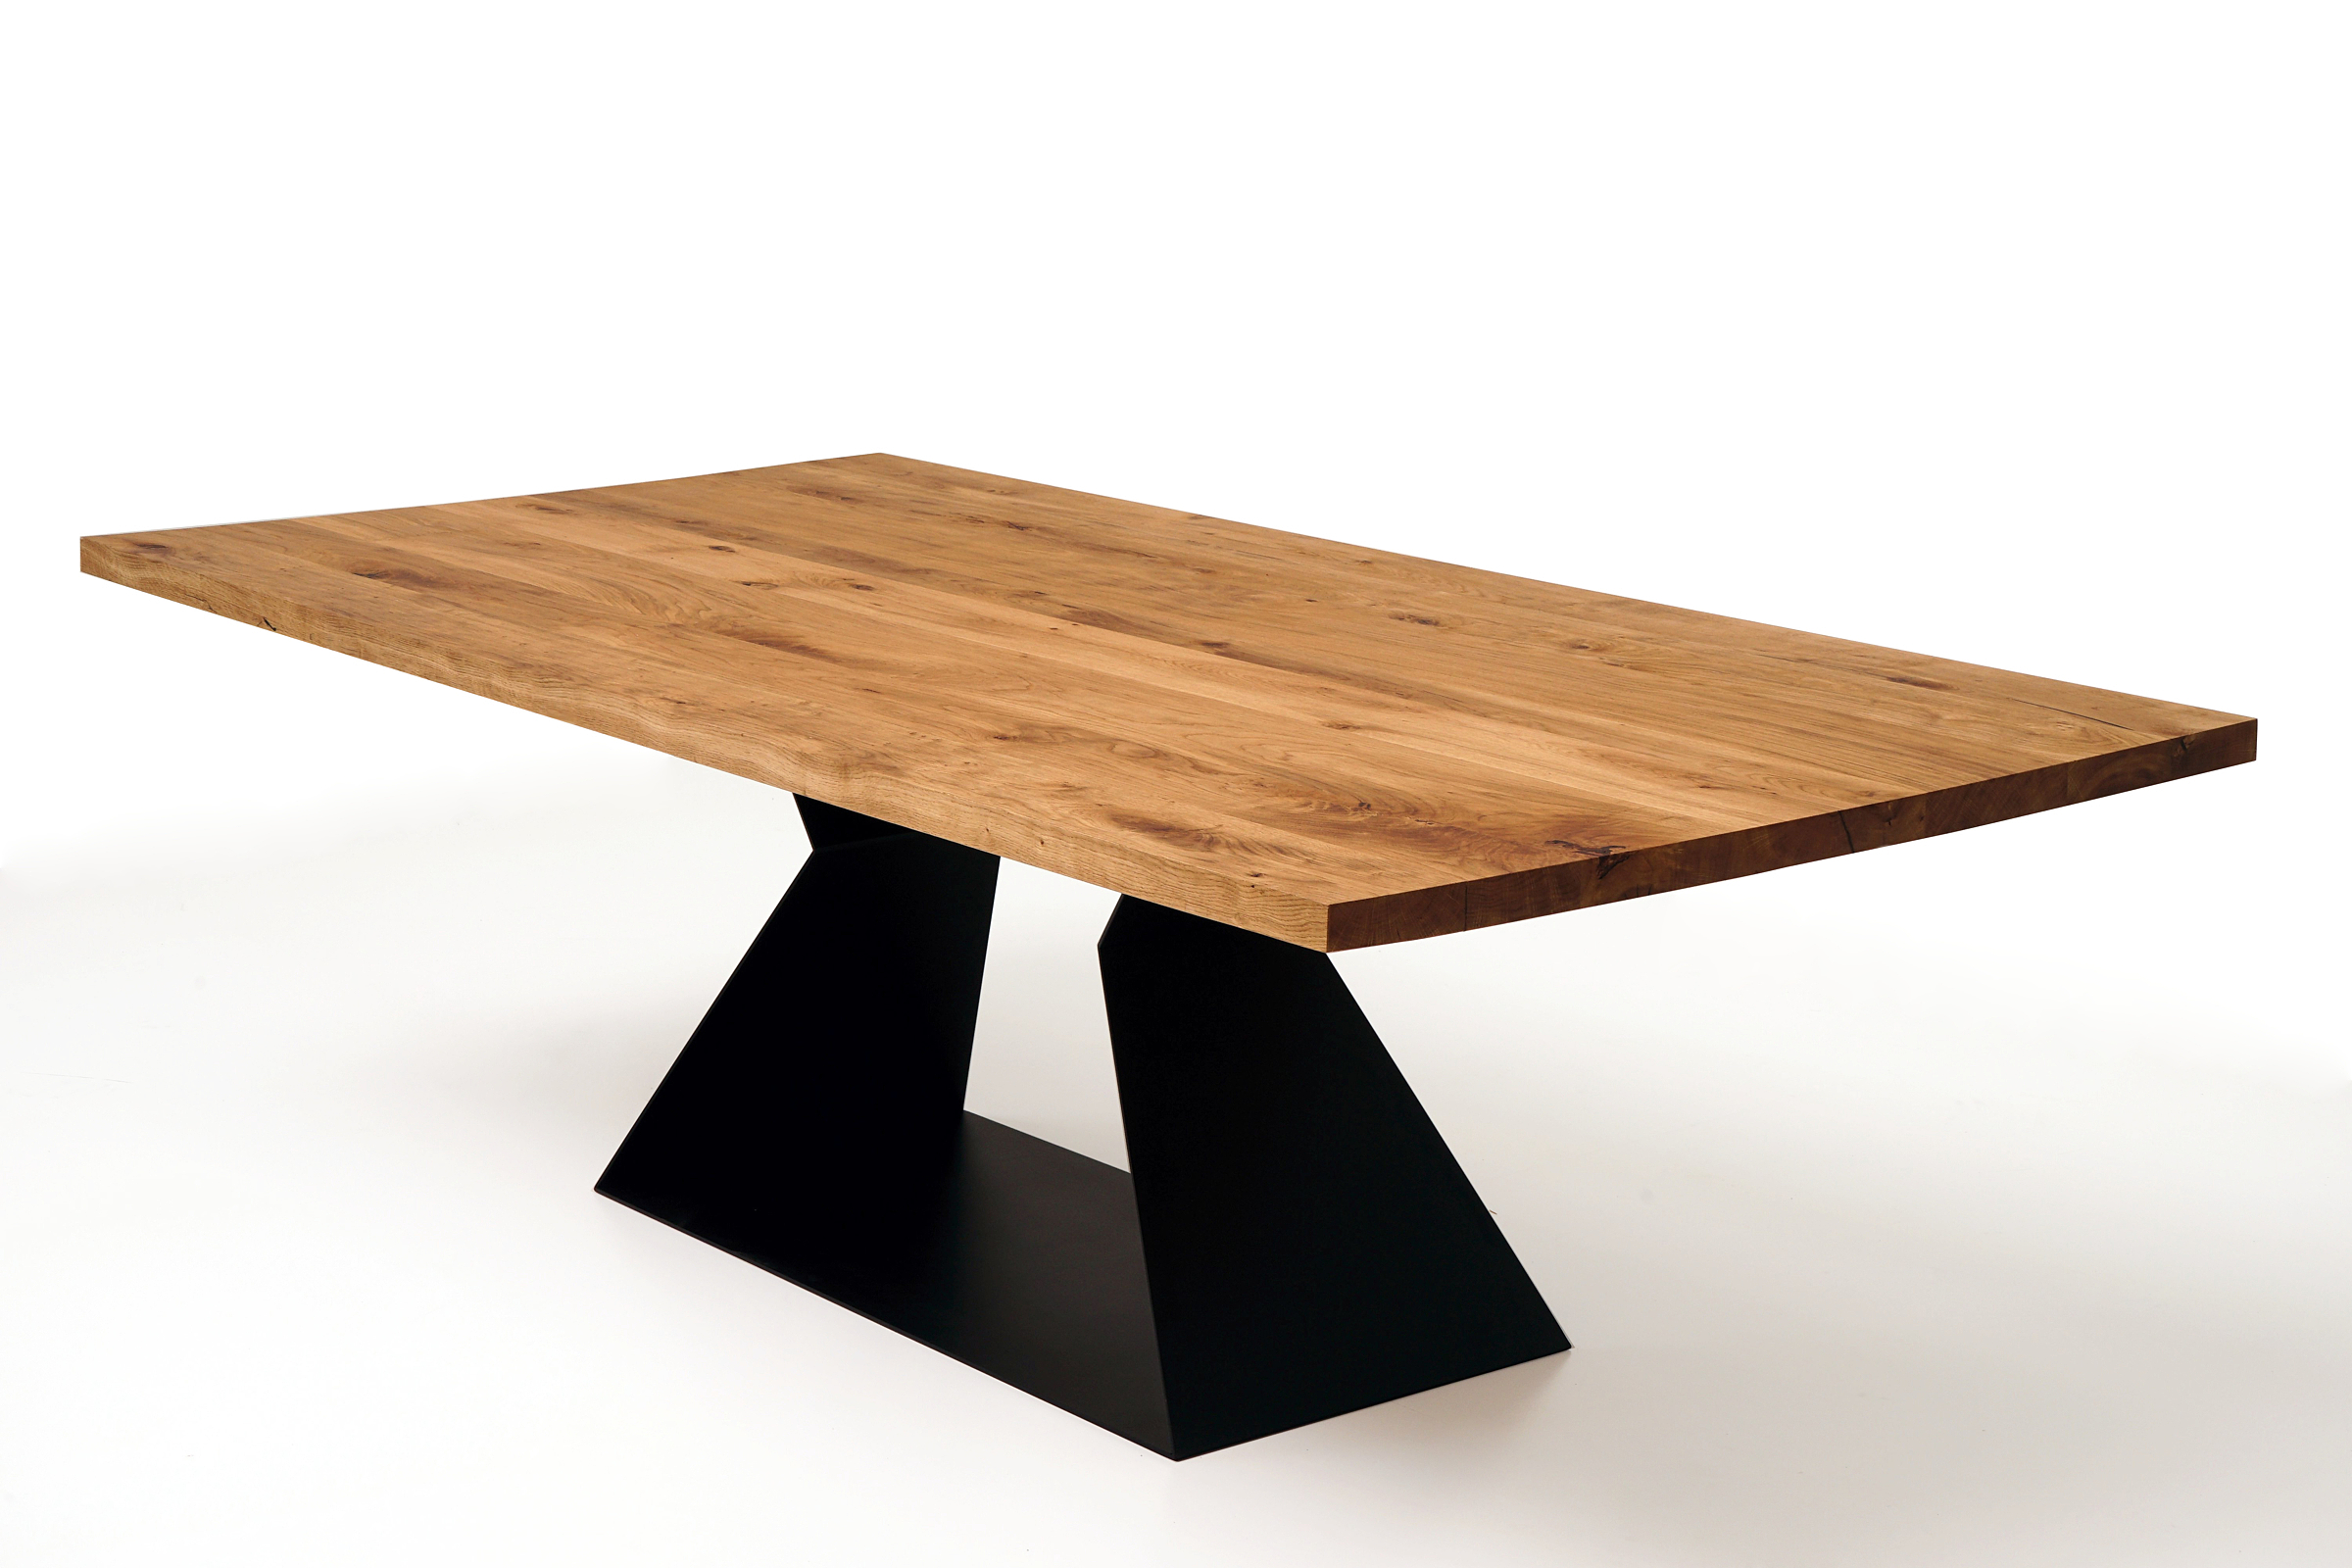 A9 stół z litym drewnianym blatem i metalową nogą z blachy